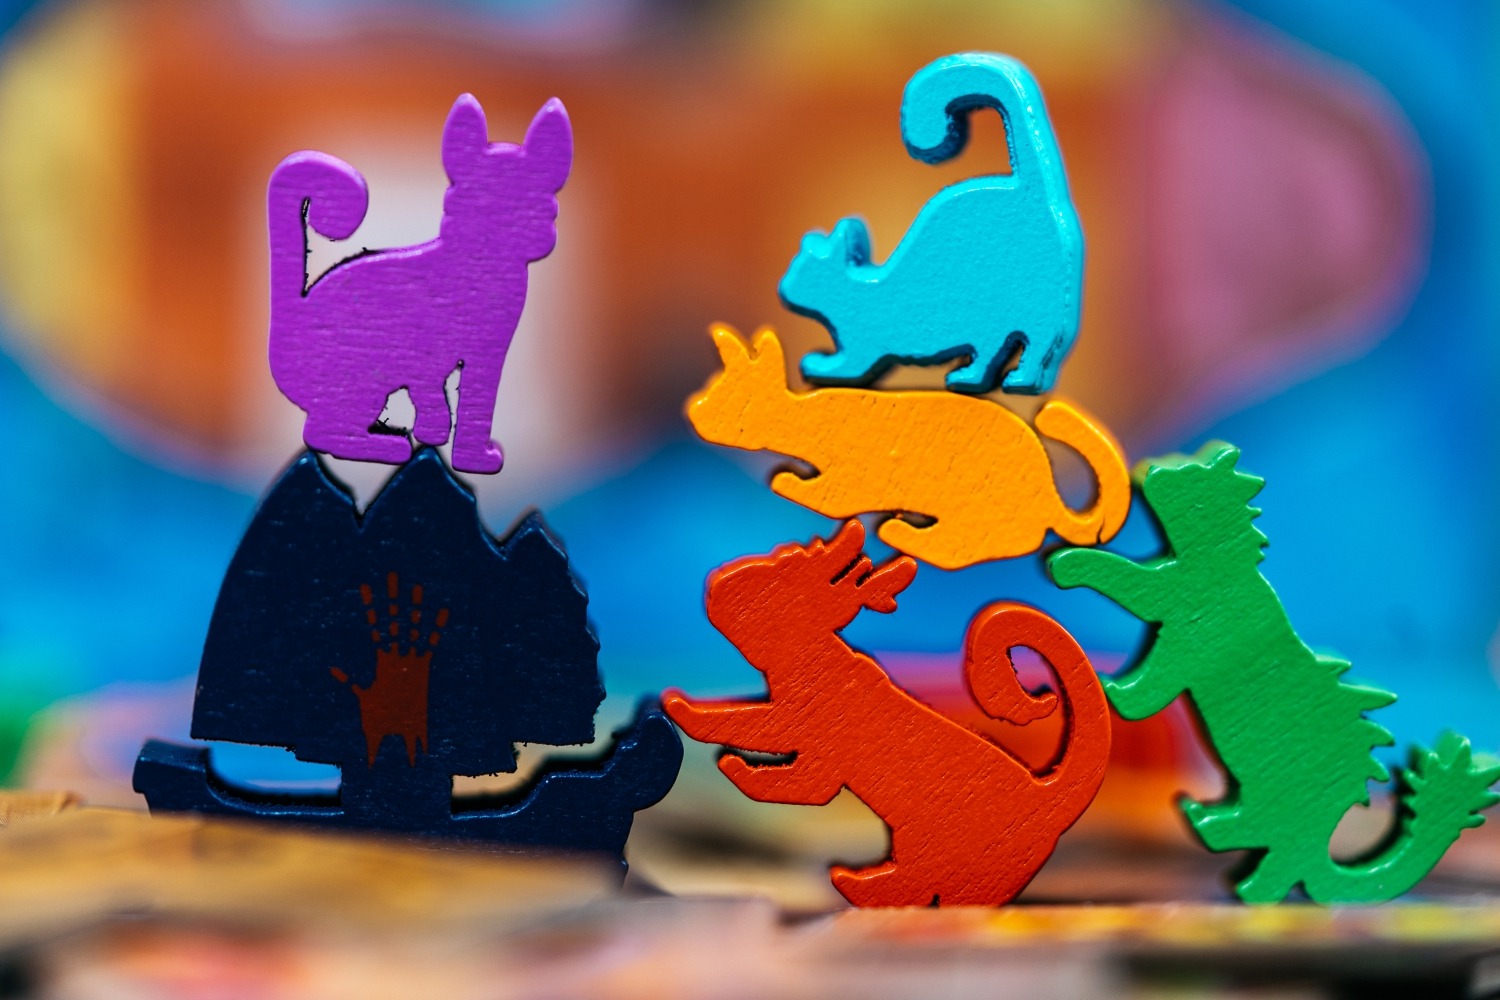 Ile des chats isle of cats lucky duck games jeu de société boardgame 